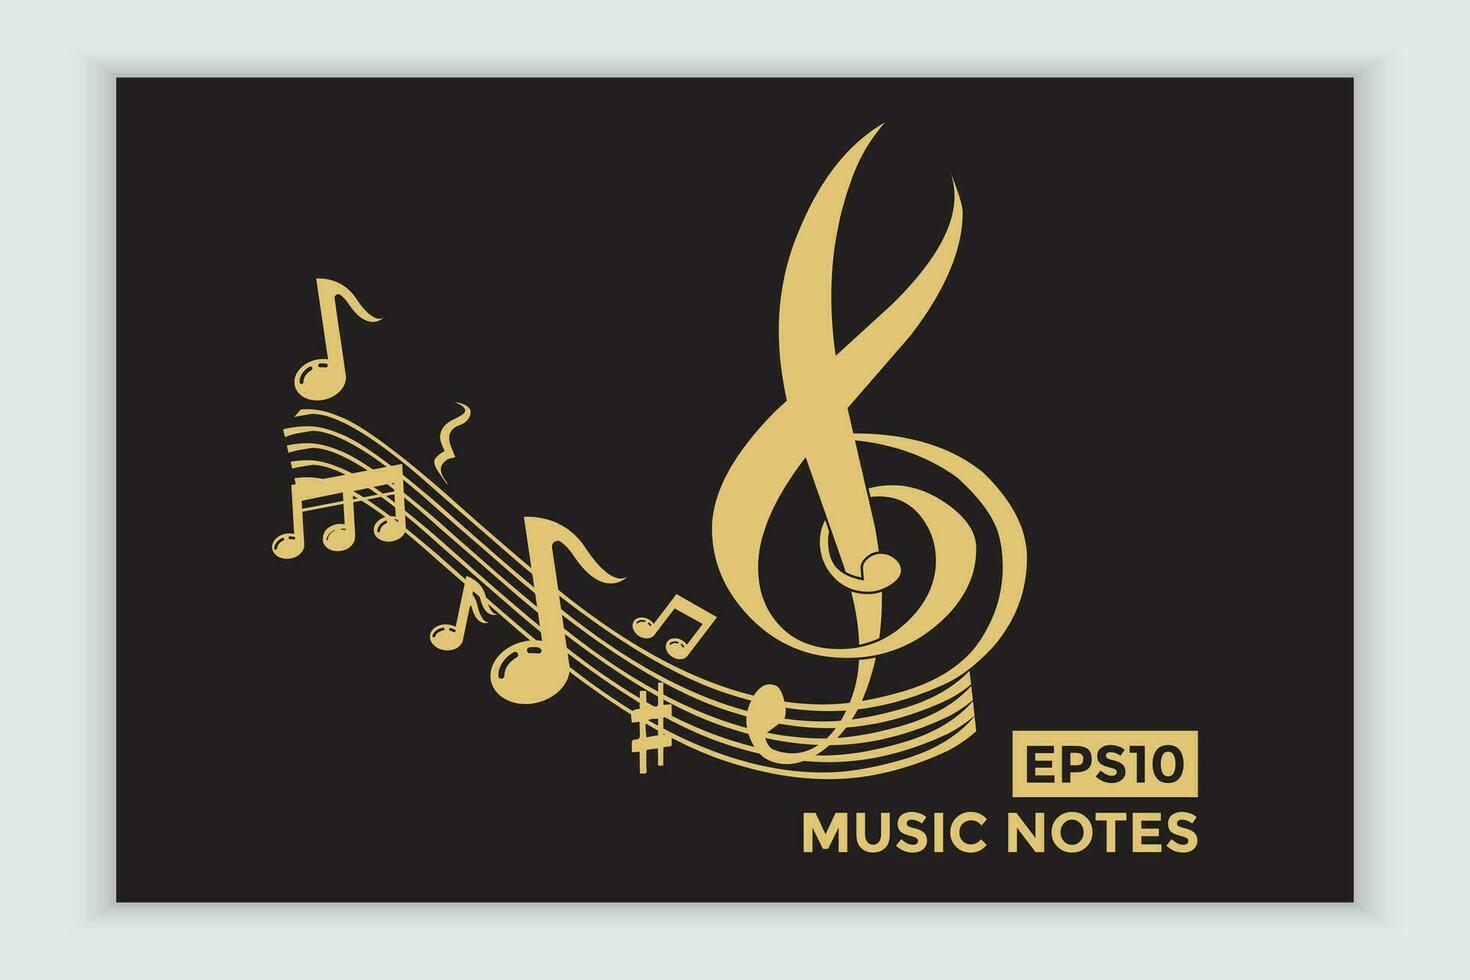 música escala ou música Nota placa ou símbolo. musical escala ícones elemento vetor para bandeira material, fundo.